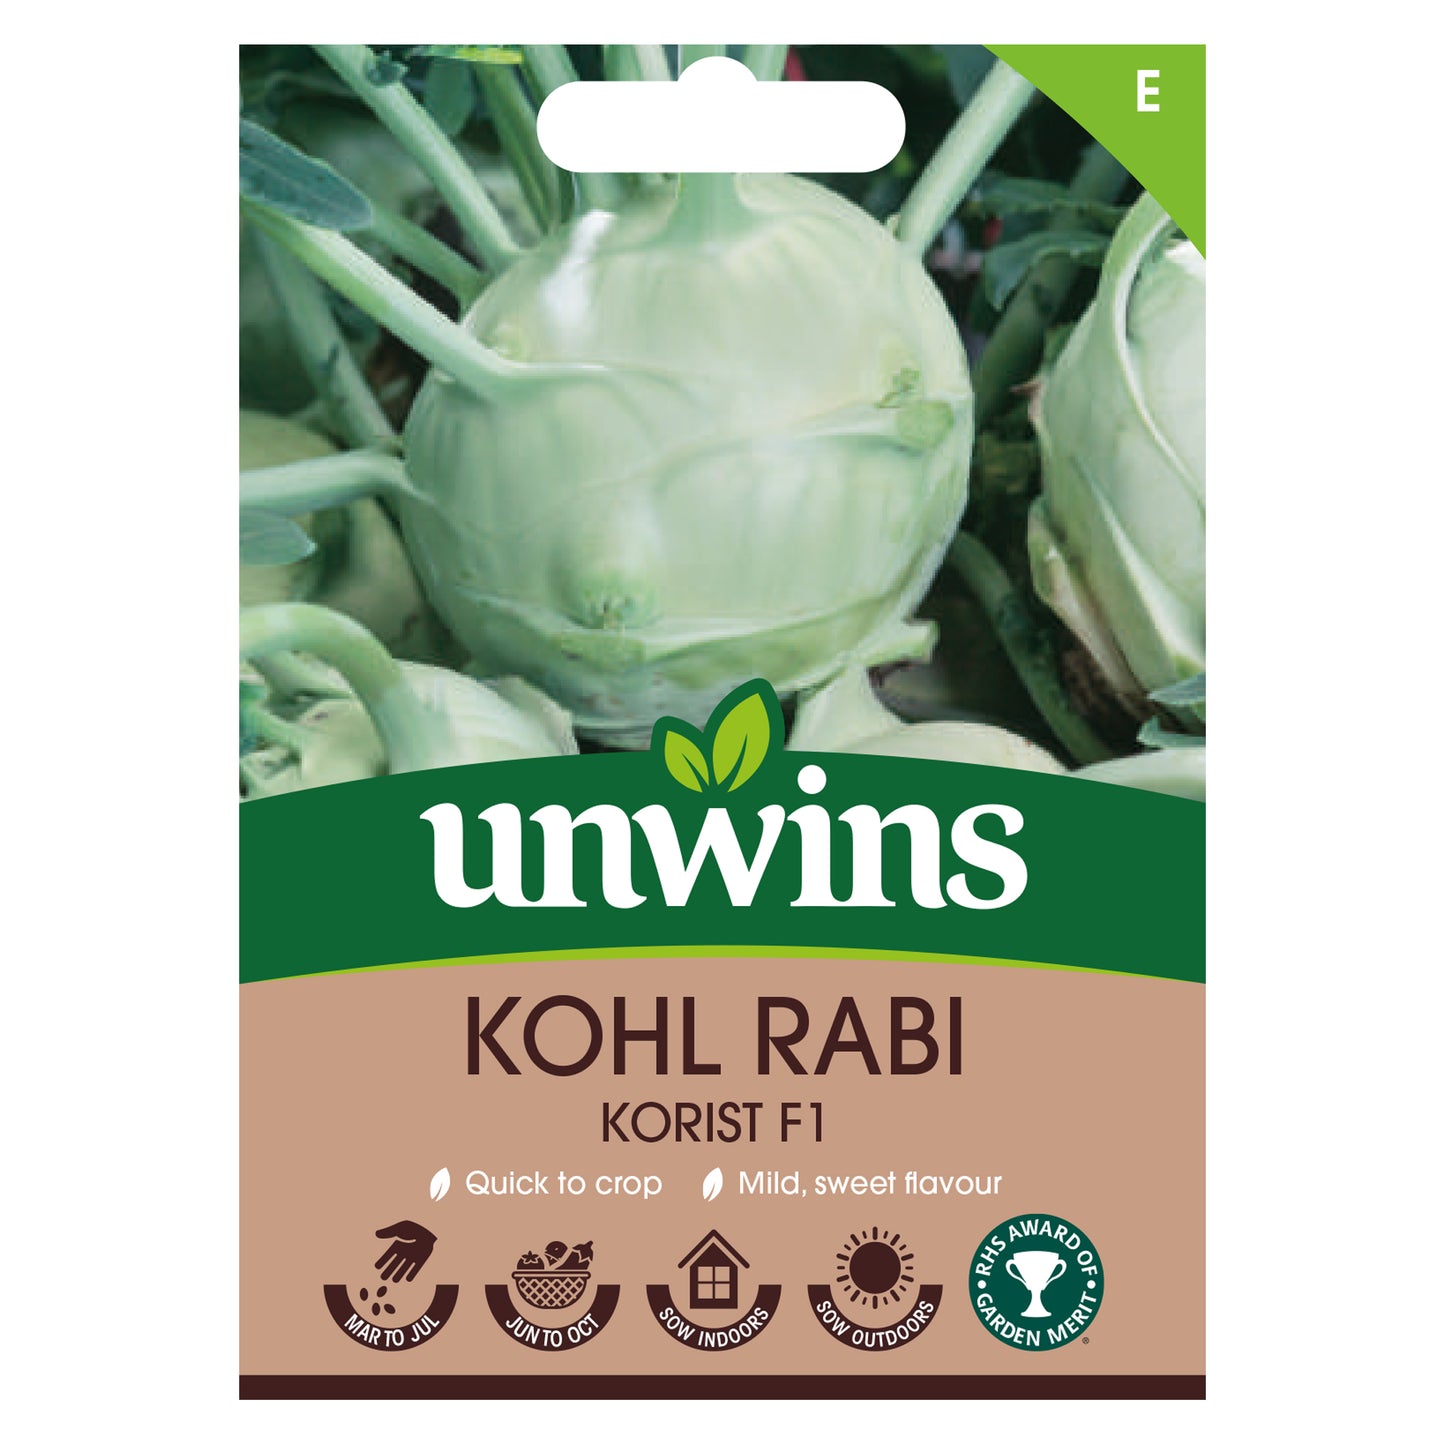 Unwins Kohl Rabi Korist F1 Seeds front of pack